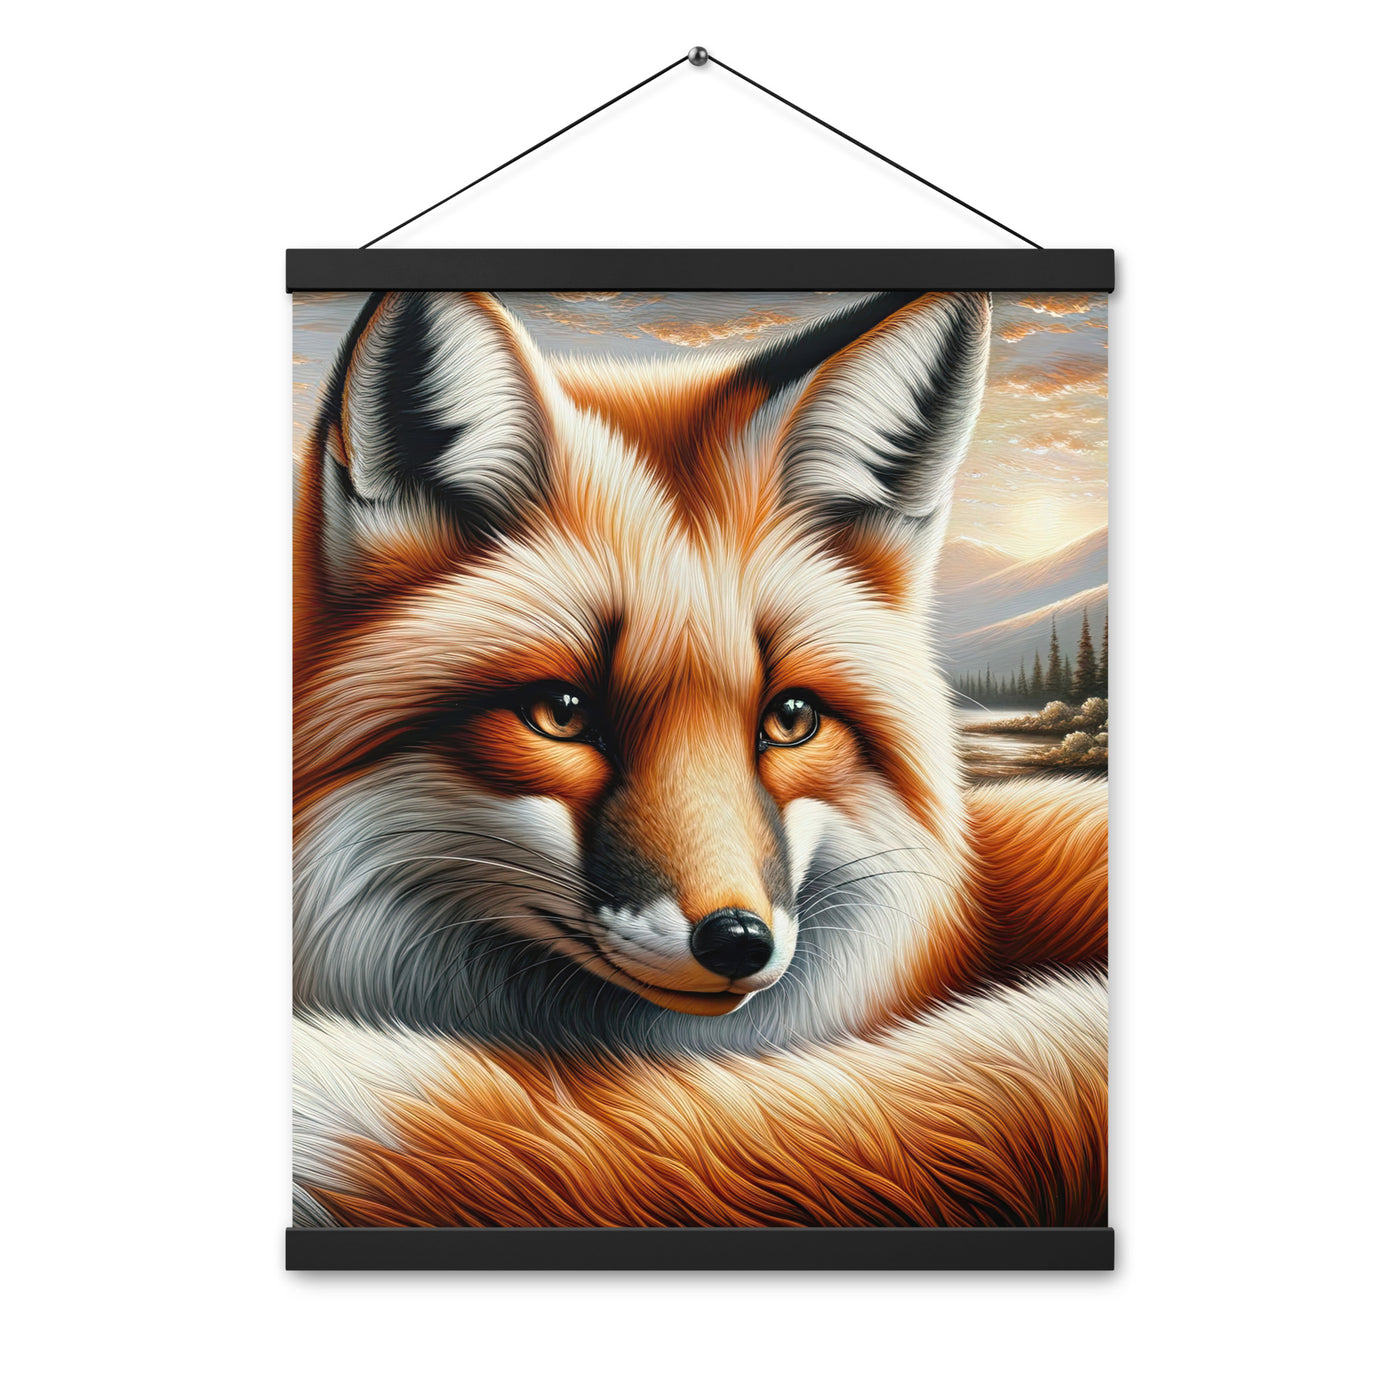 Ölgemälde eines nachdenklichen Fuchses mit weisem Blick - Premium Poster mit Aufhängung camping xxx yyy zzz 40.6 x 50.8 cm